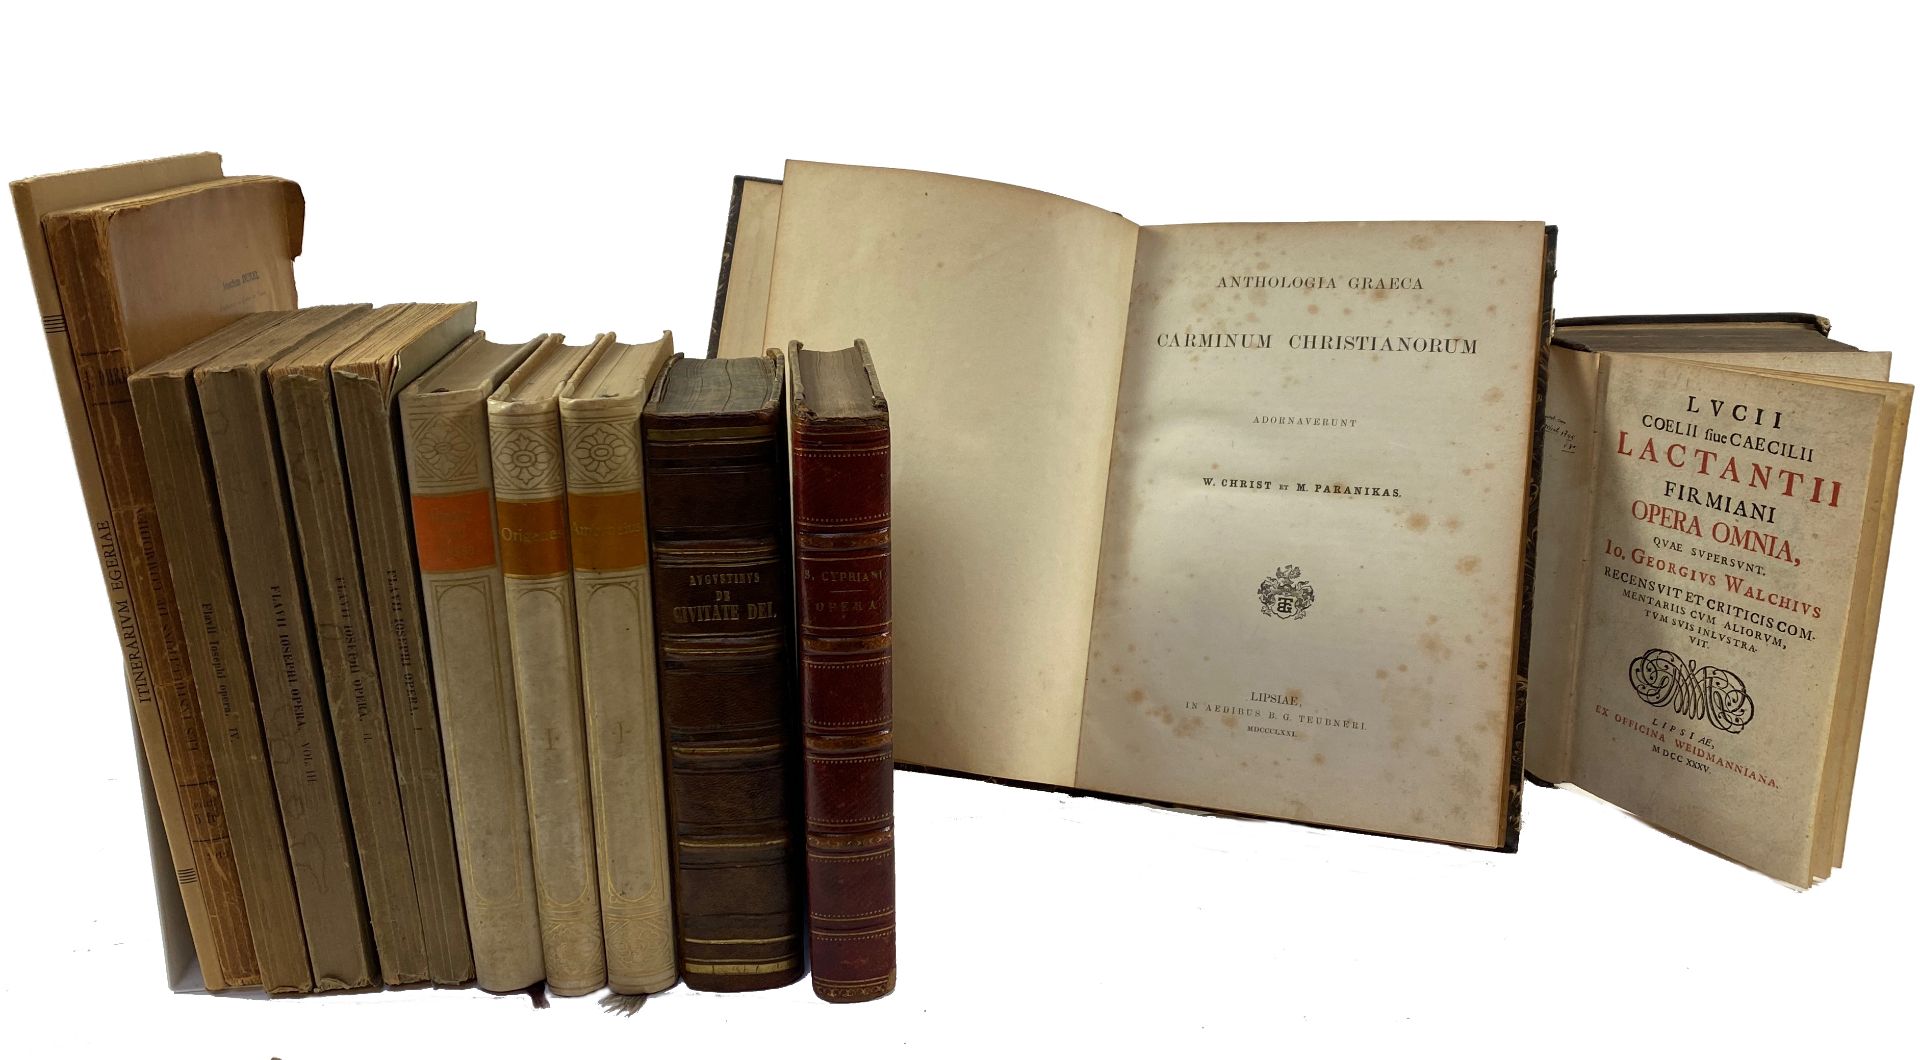 ANTHOLOGIA GRAECA carminum Christianorum. Adornaverunt W. Christ & M. Paranikas. 1871. Lge-8